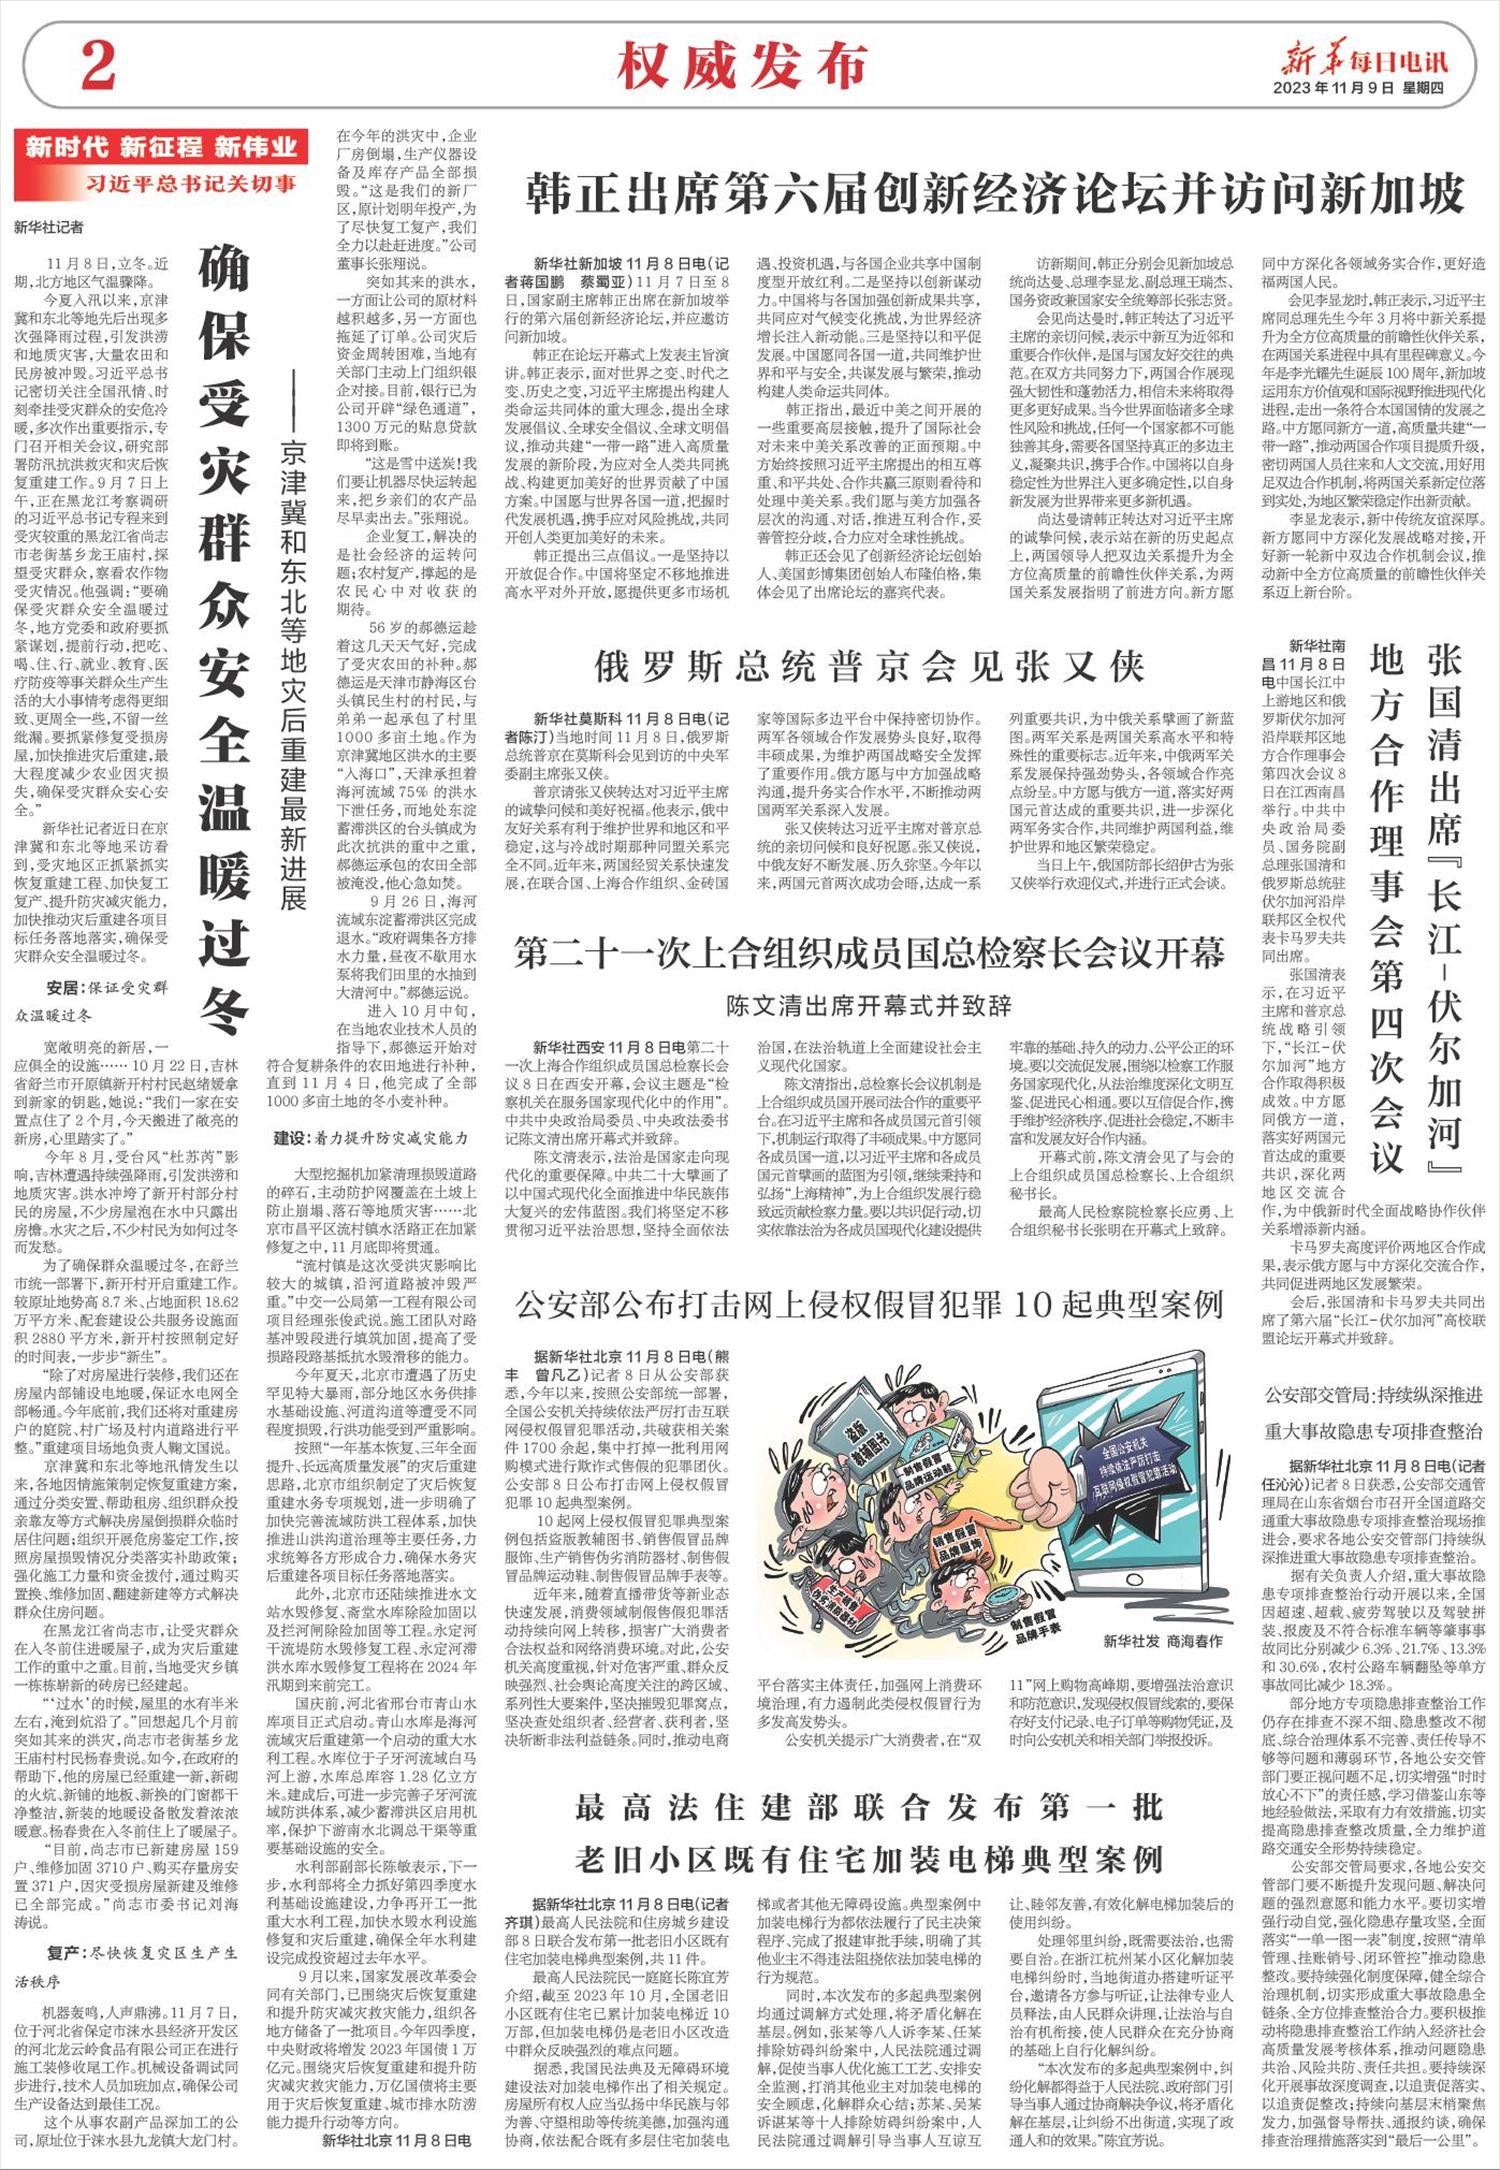 新华每日电讯-微报纸-2023年11月09日